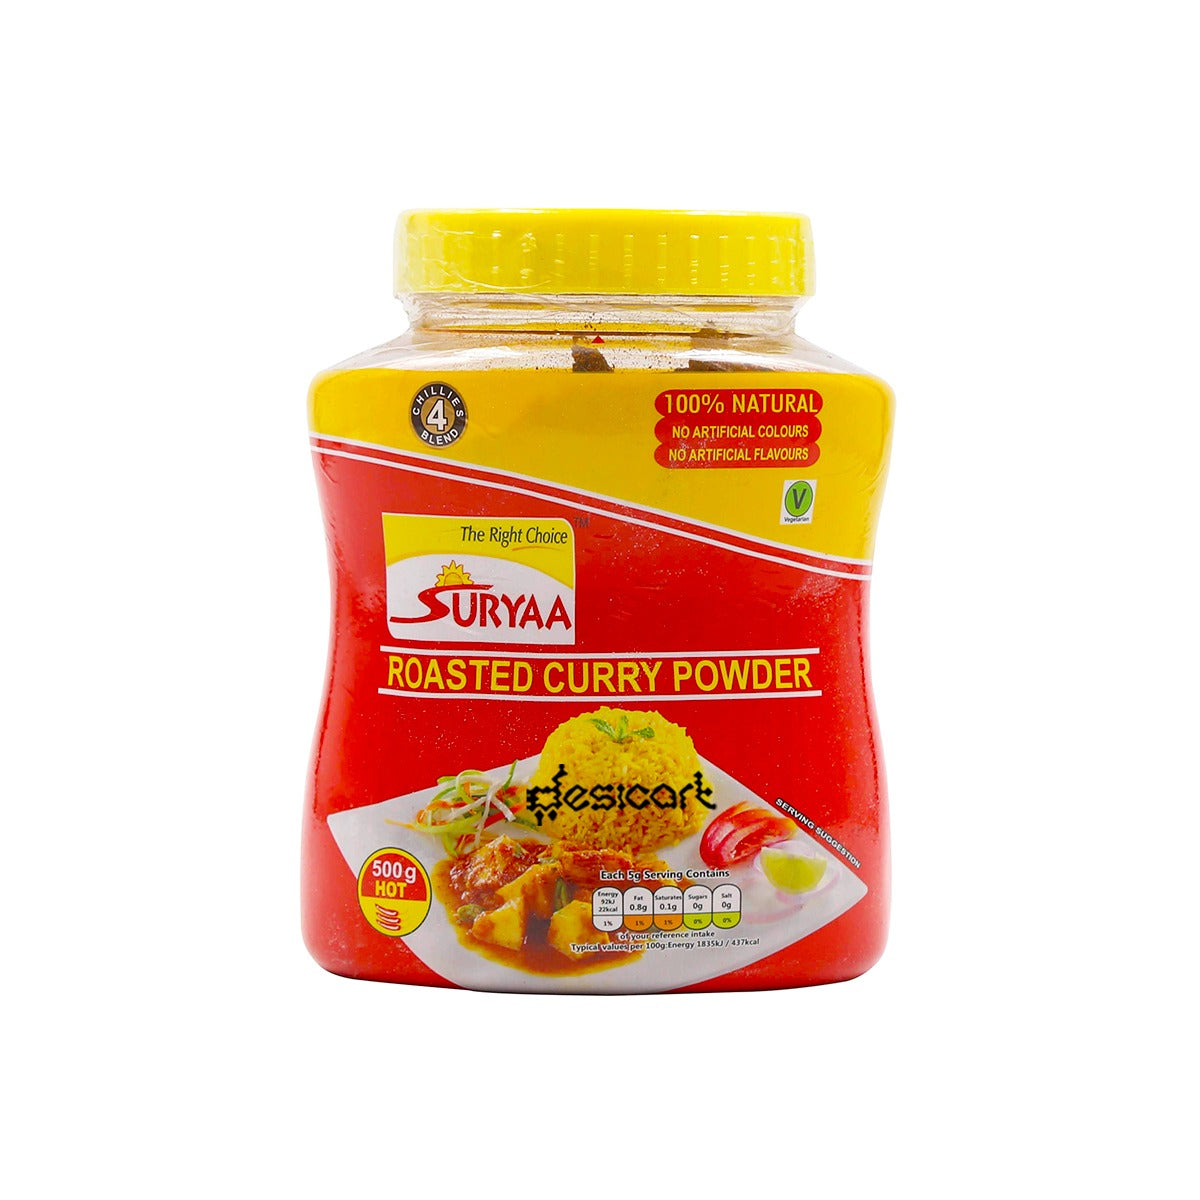 Surya Roasted Curry Powder Hot 500g